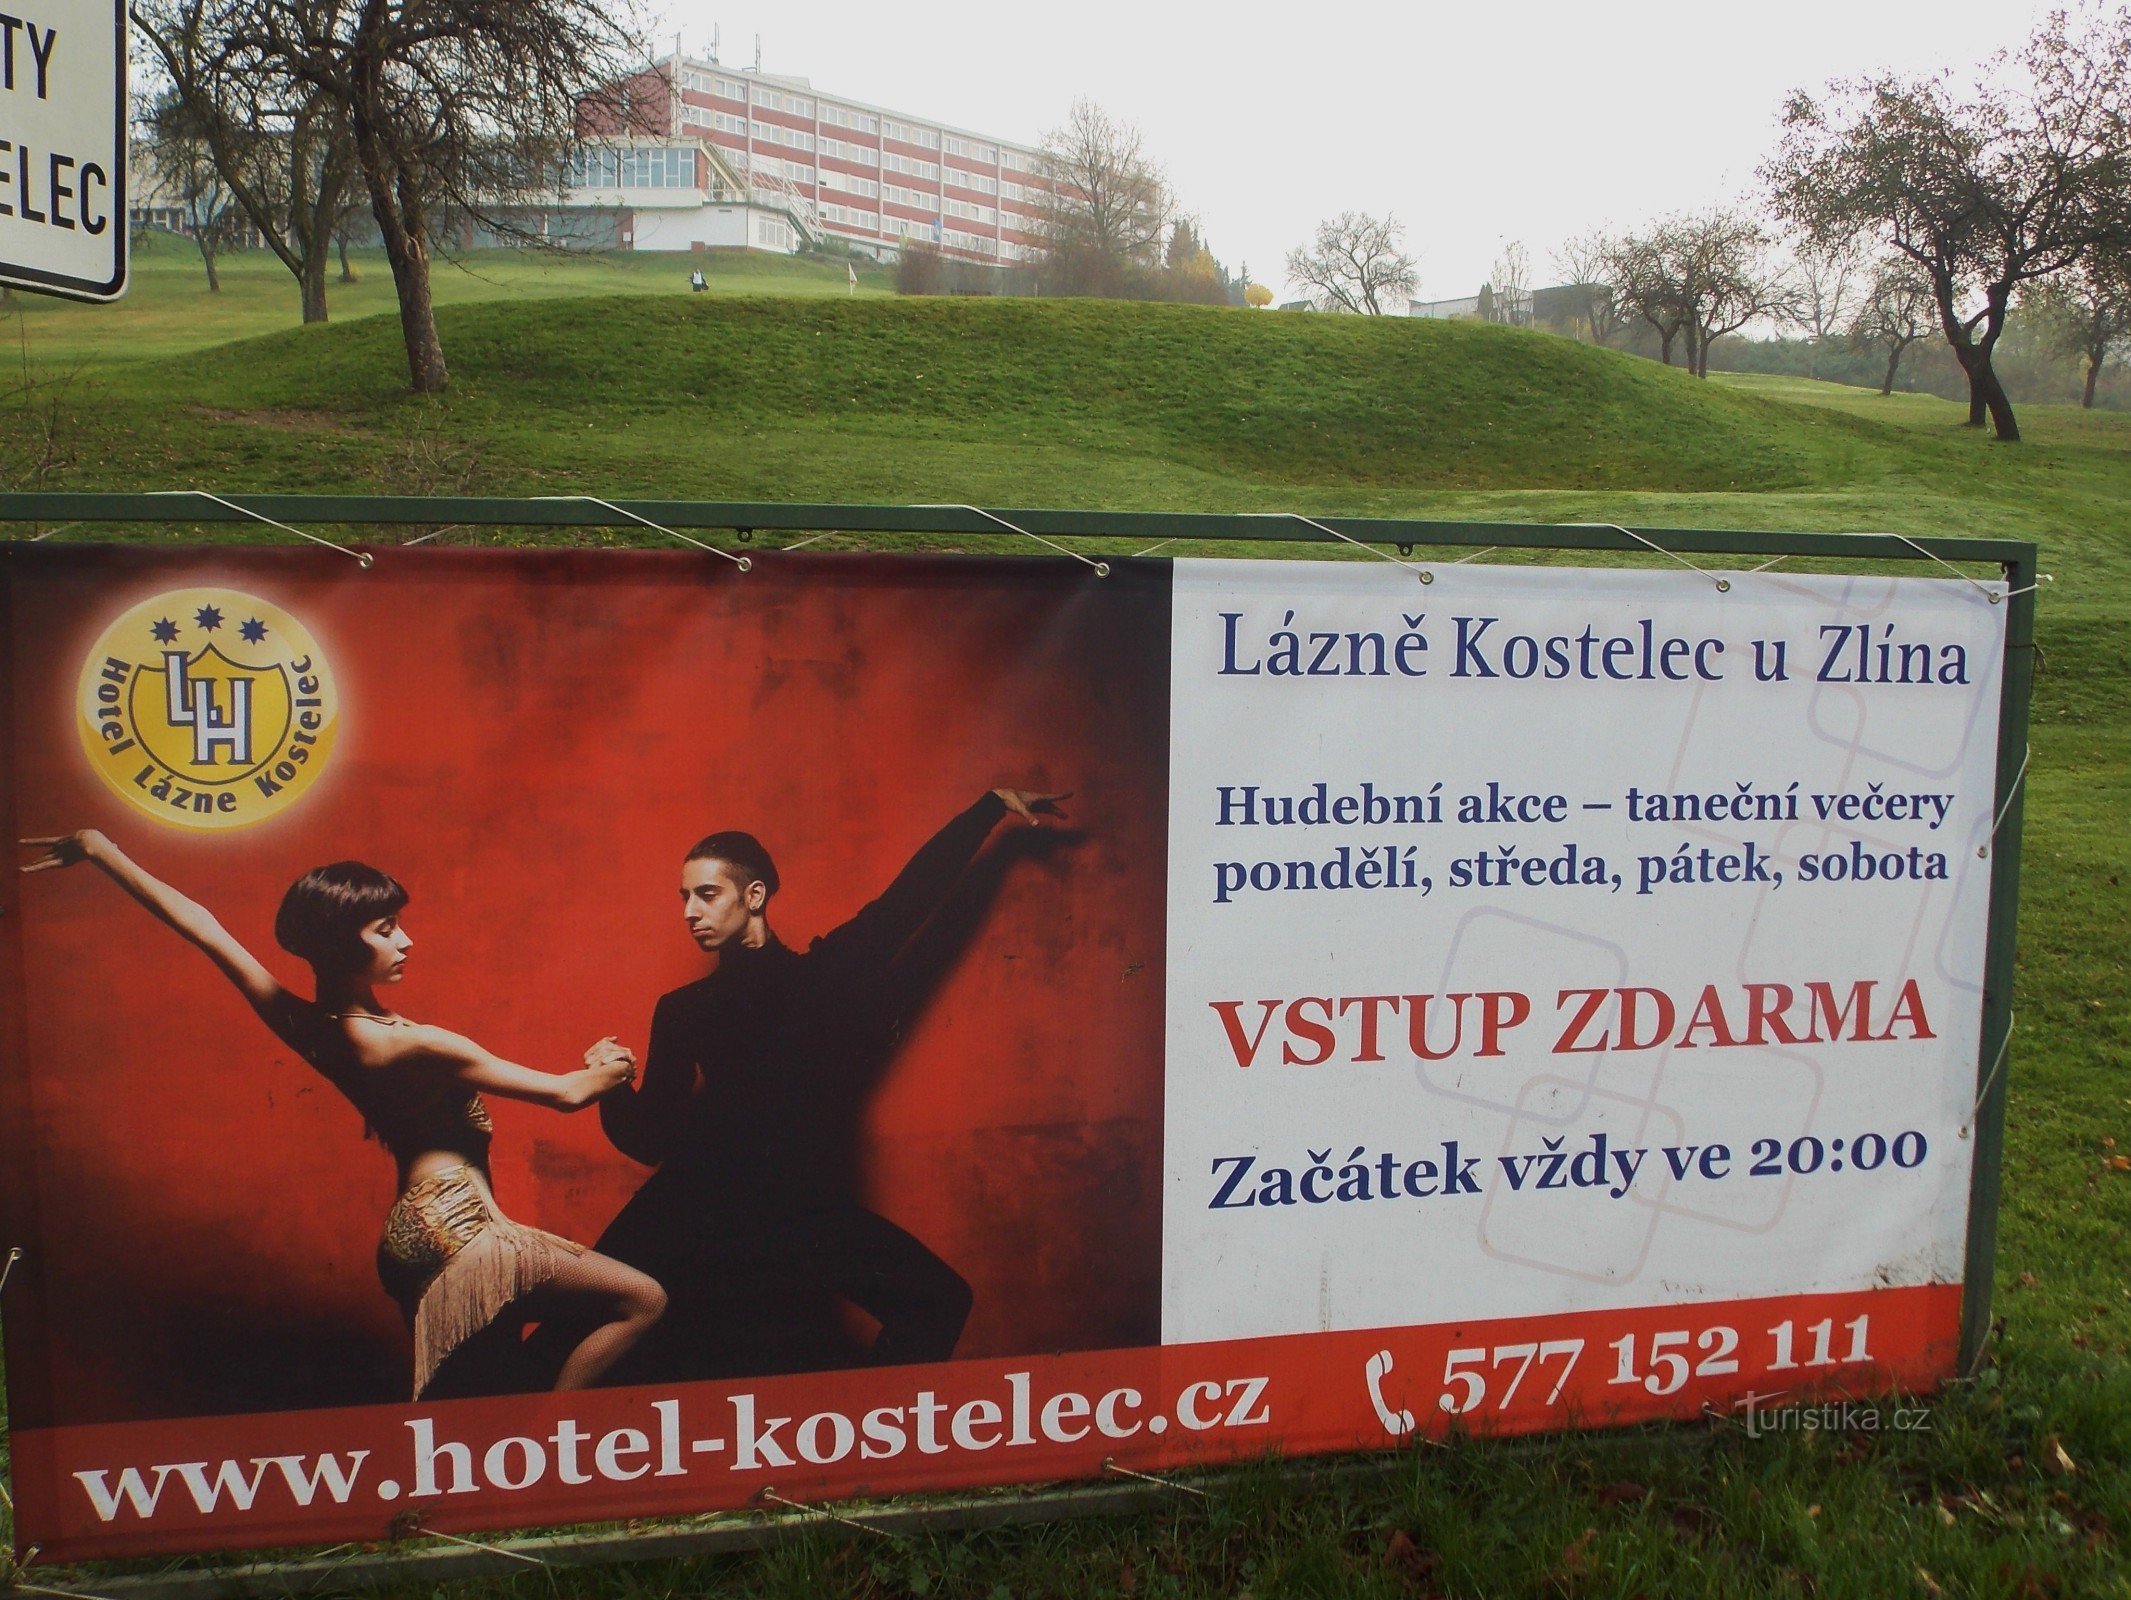 为了健康和放松，去 Zlín 附近的 Koselec 水疗中心